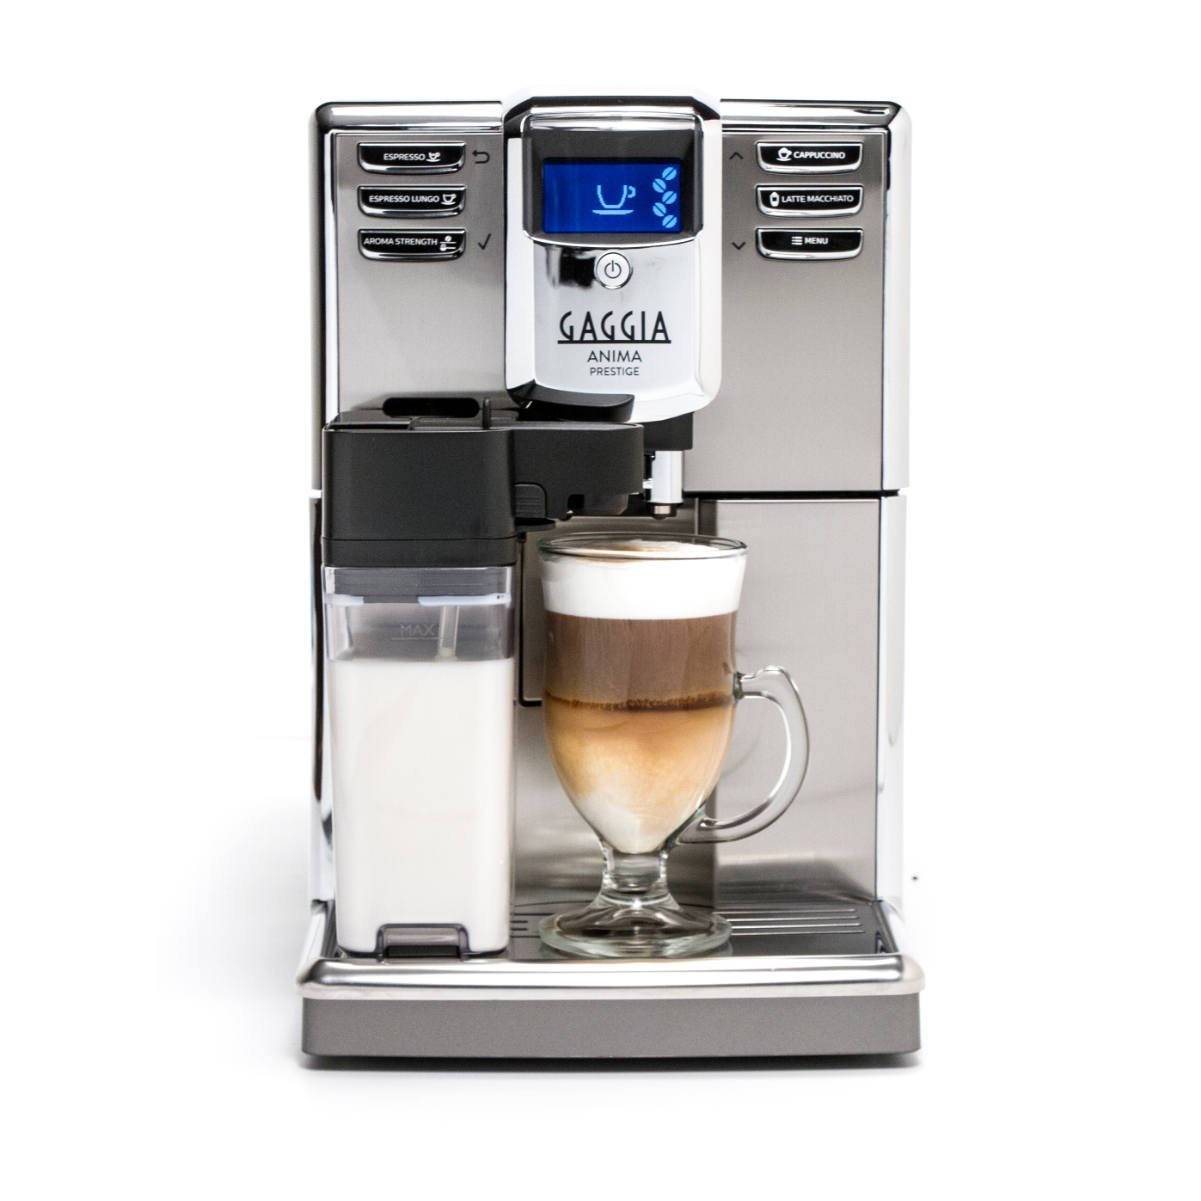 1 Gaggia Anima Prestige Automatic Coffee Machine